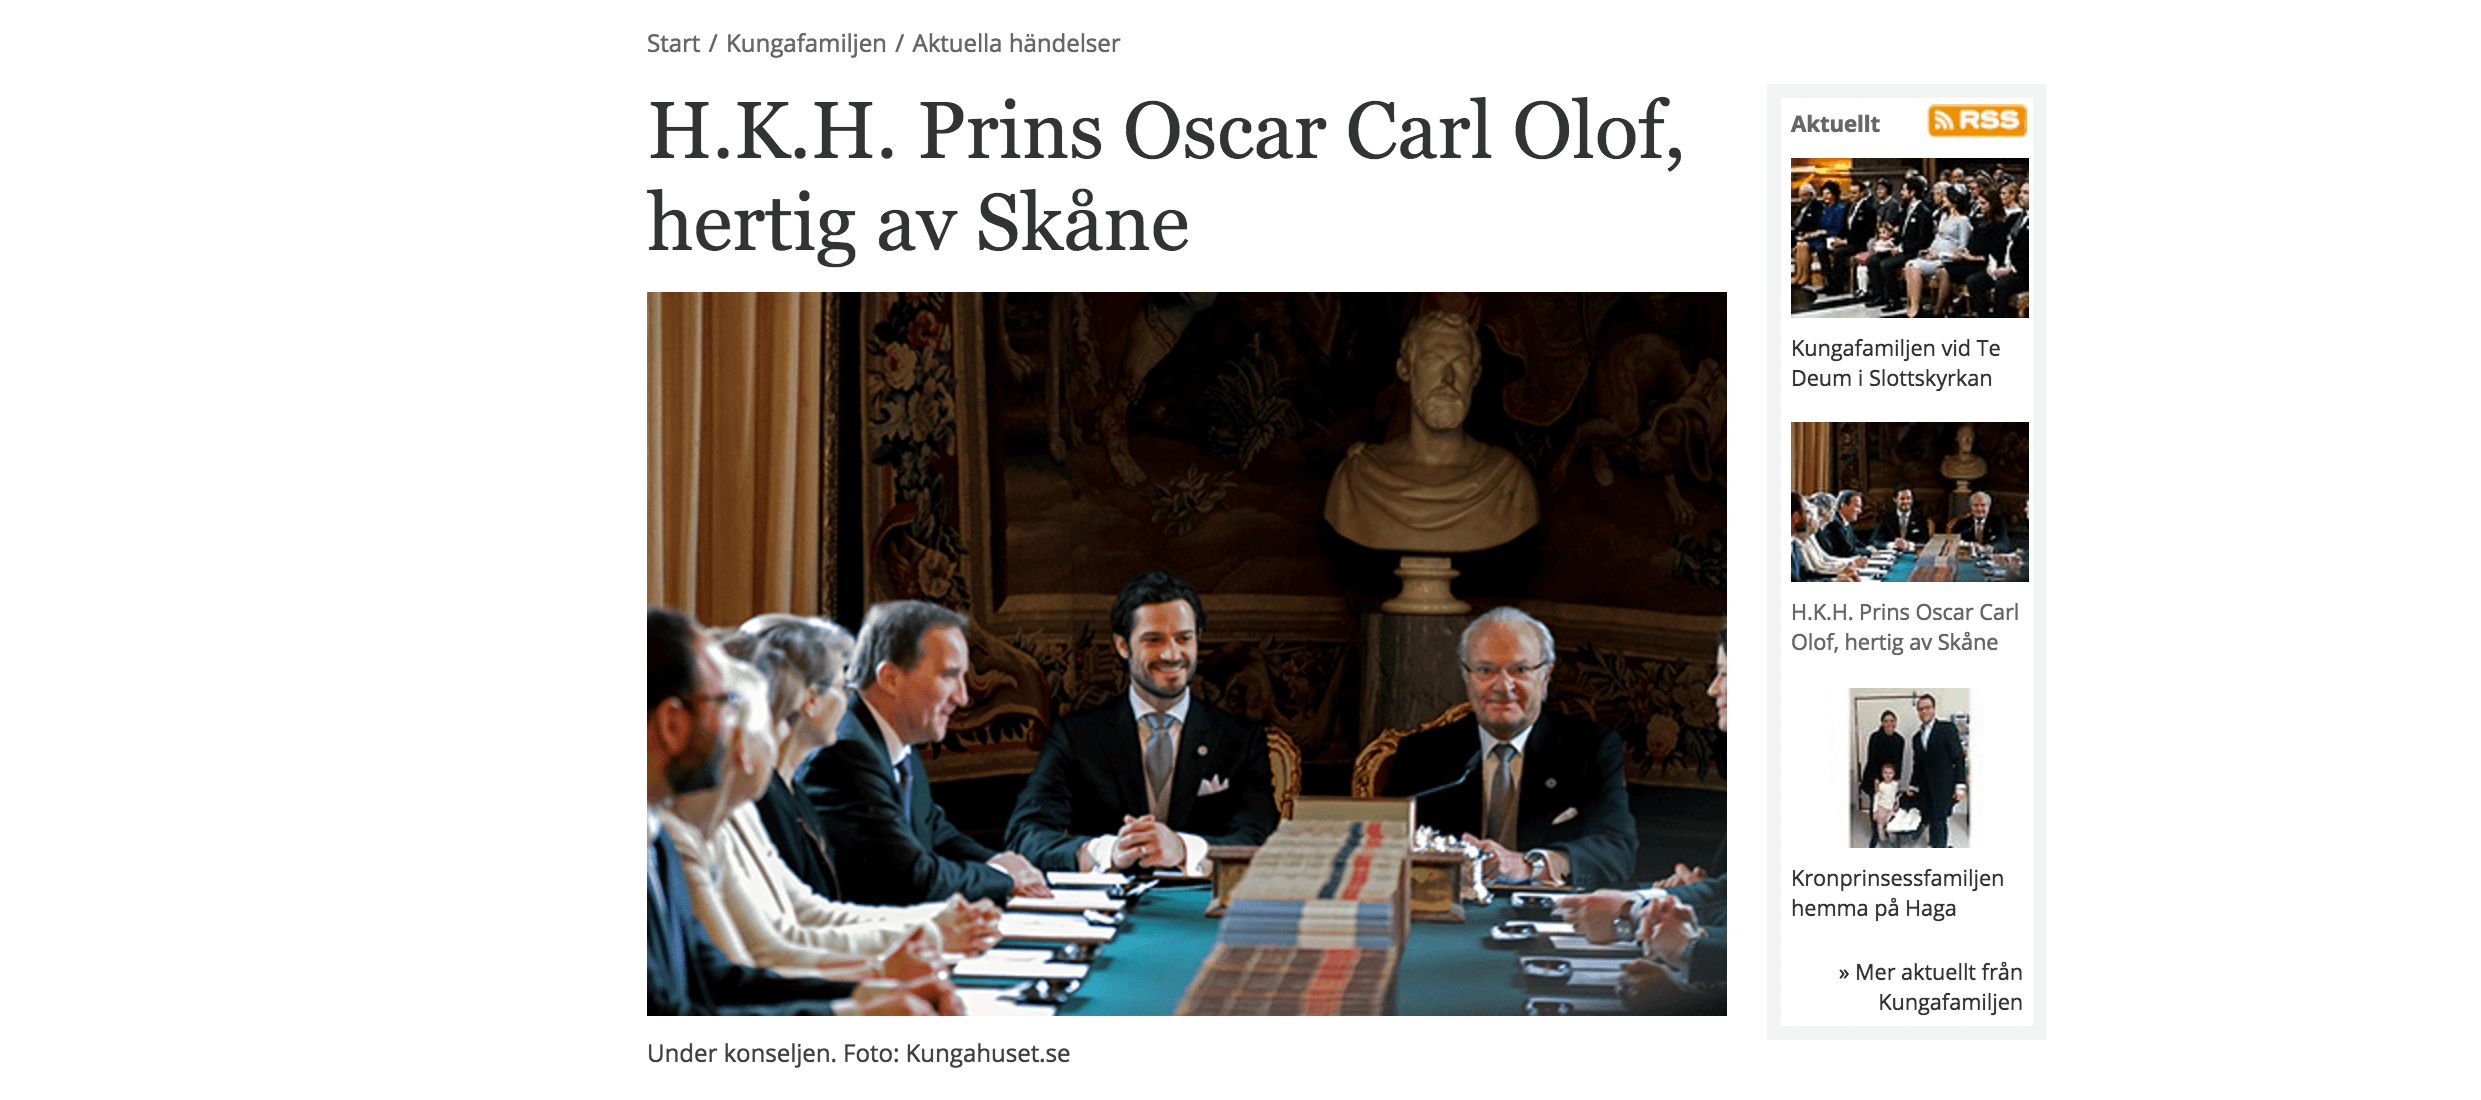 Named Prince Oscar of Sweden